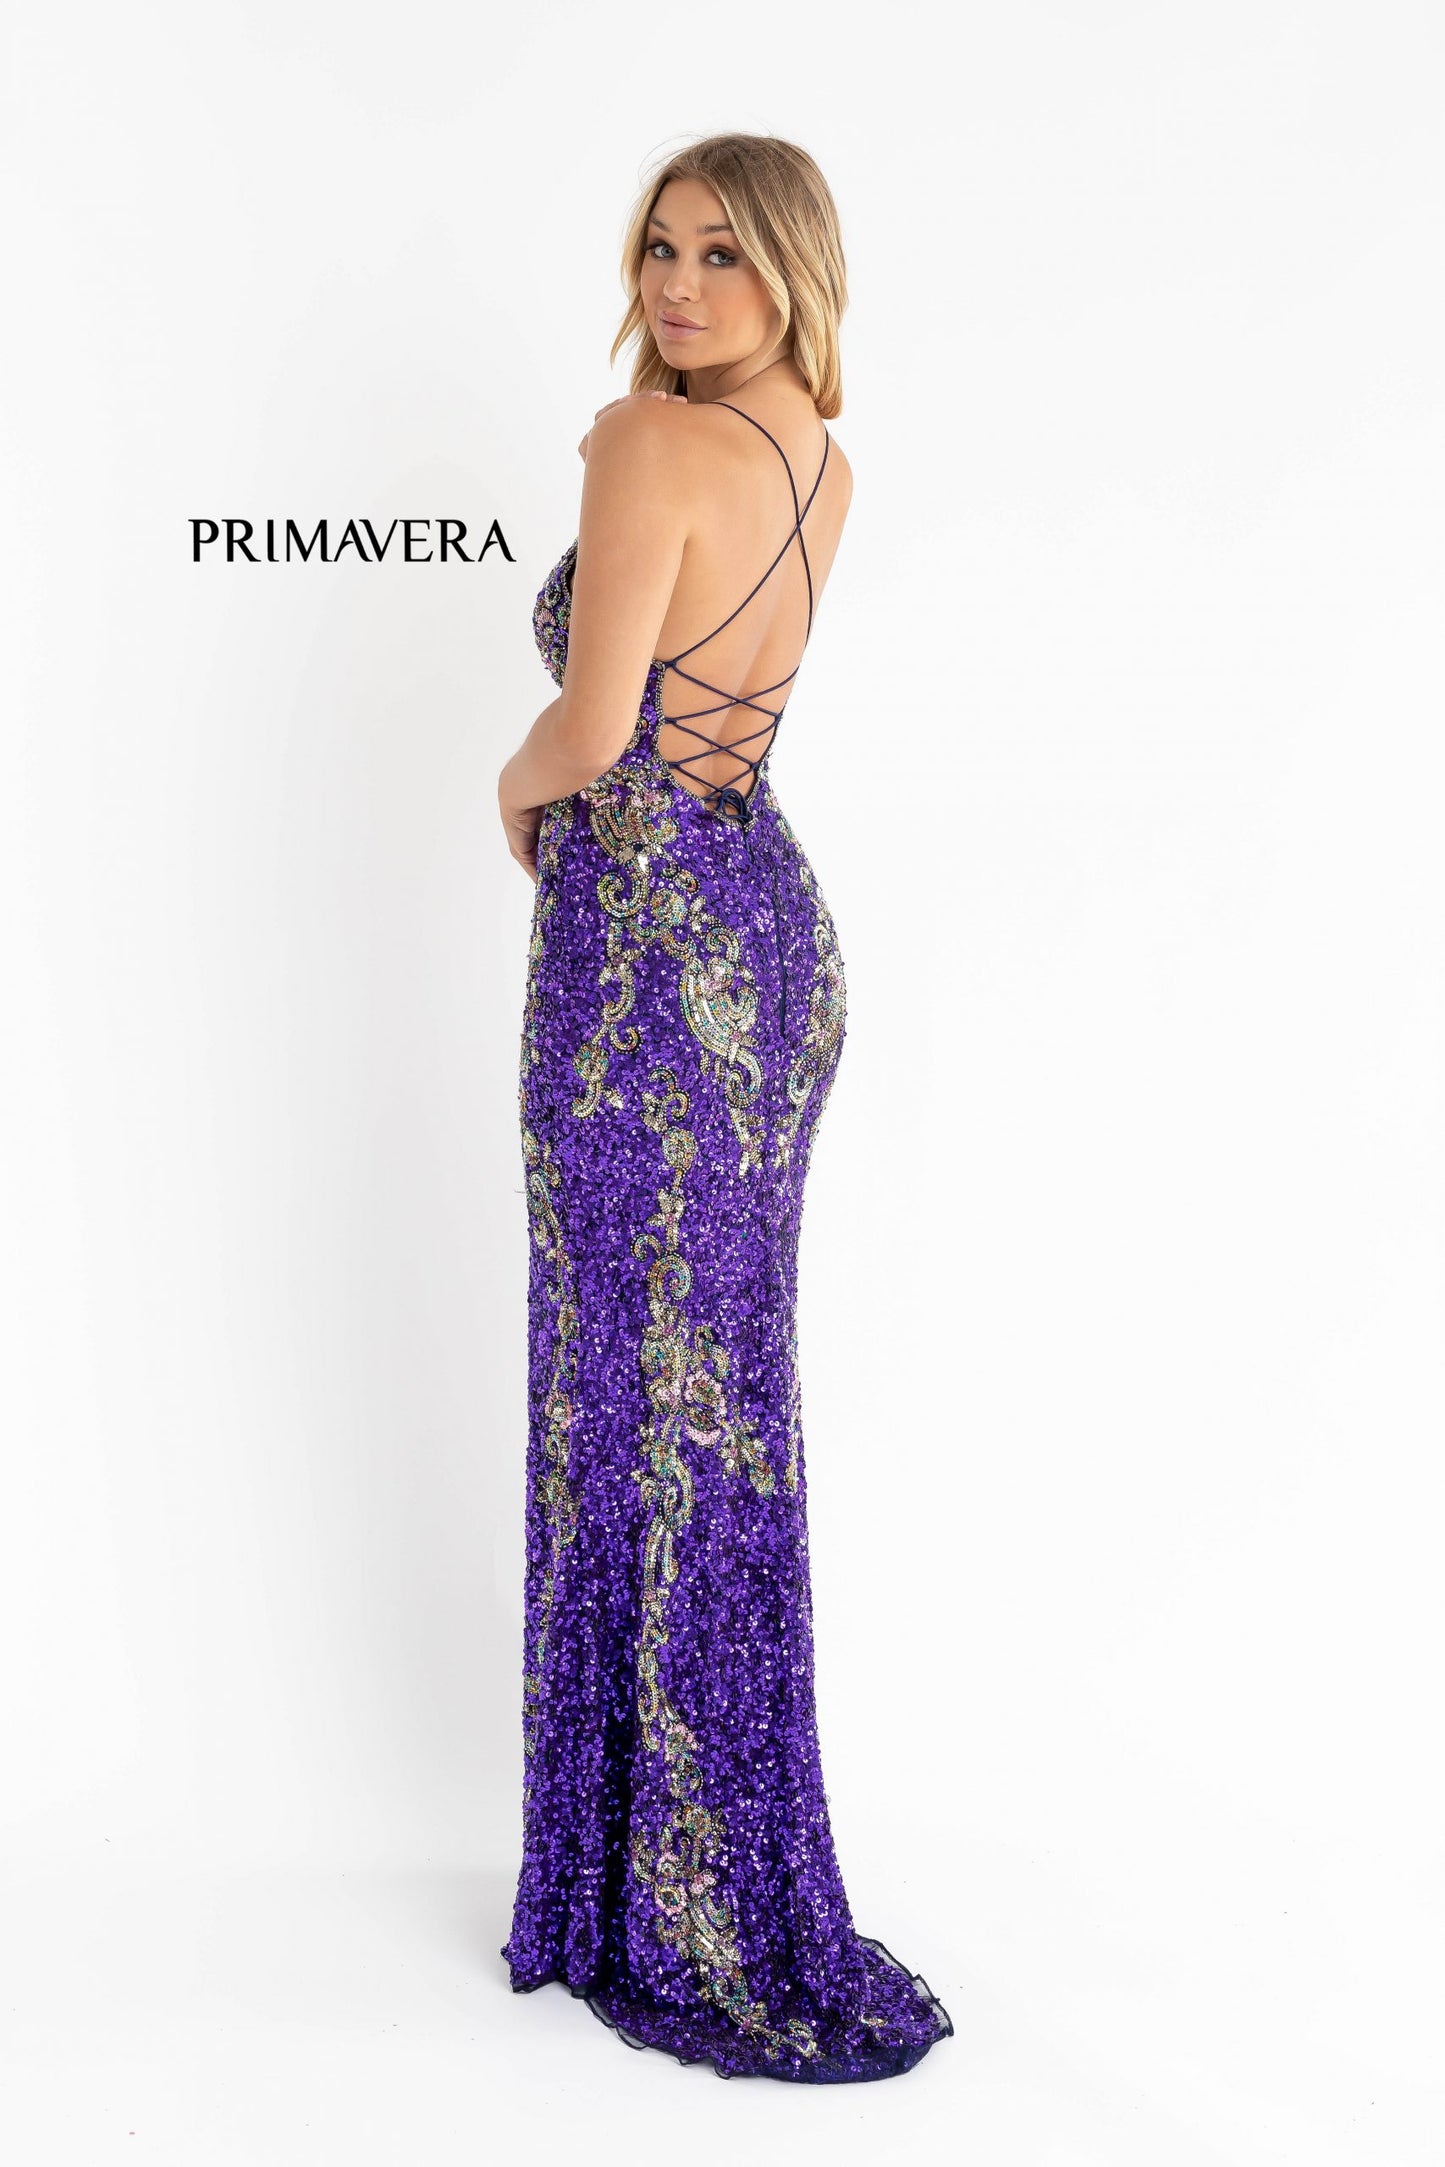 Primavera-Couture-3211-Purple-prom-dress-back-v-neckline-floral-sequins-lace-up-tie-back-slit